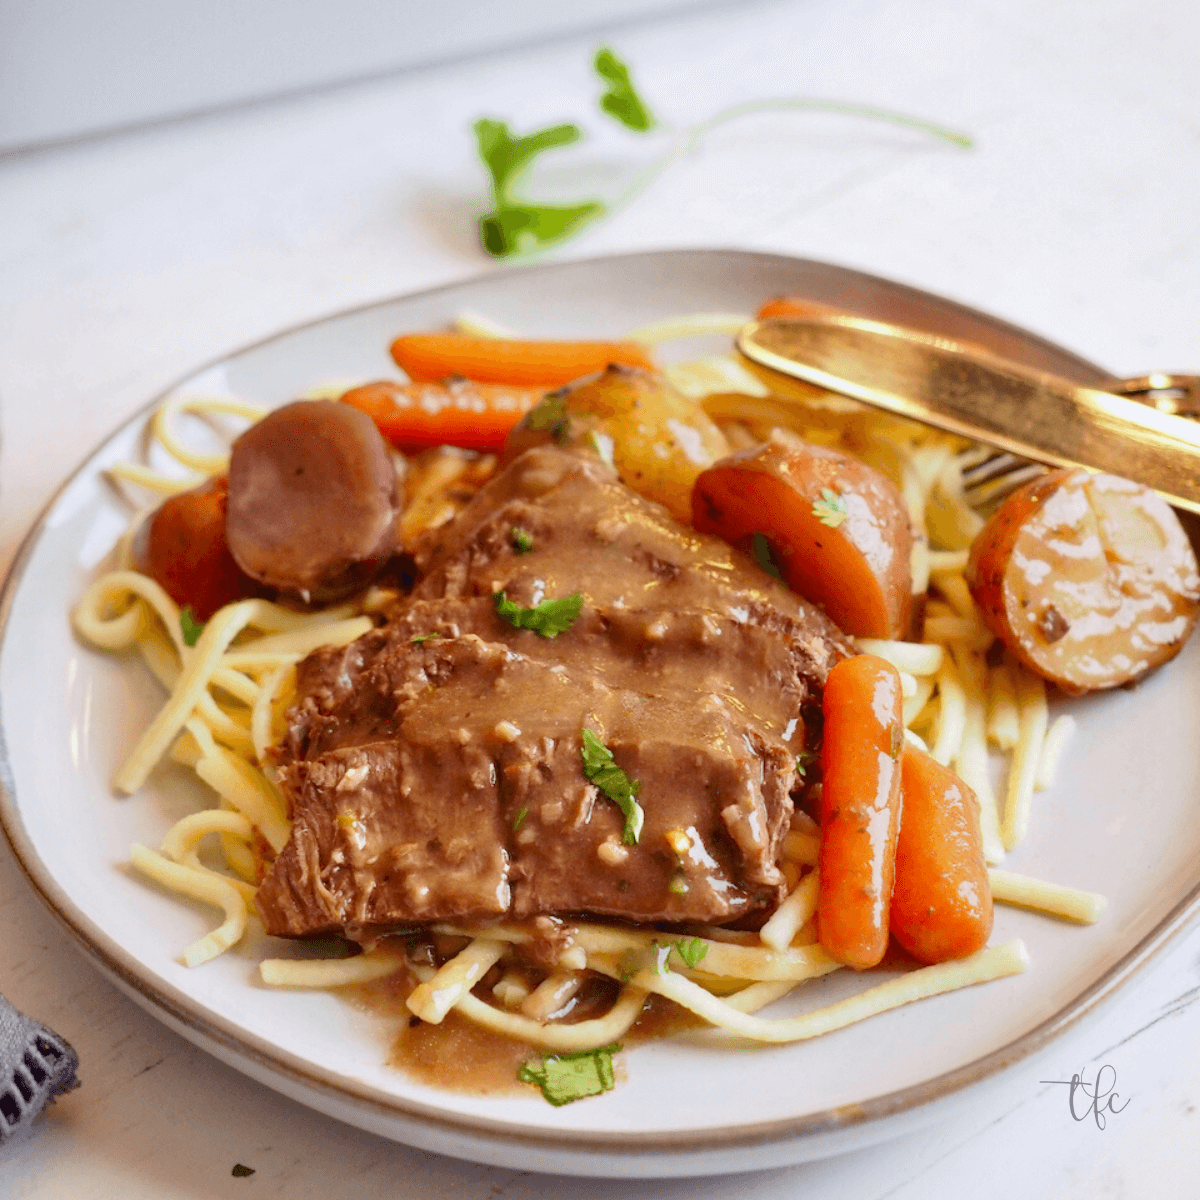 Crockpot Round Steak - Lynn's Kitchen Adventures